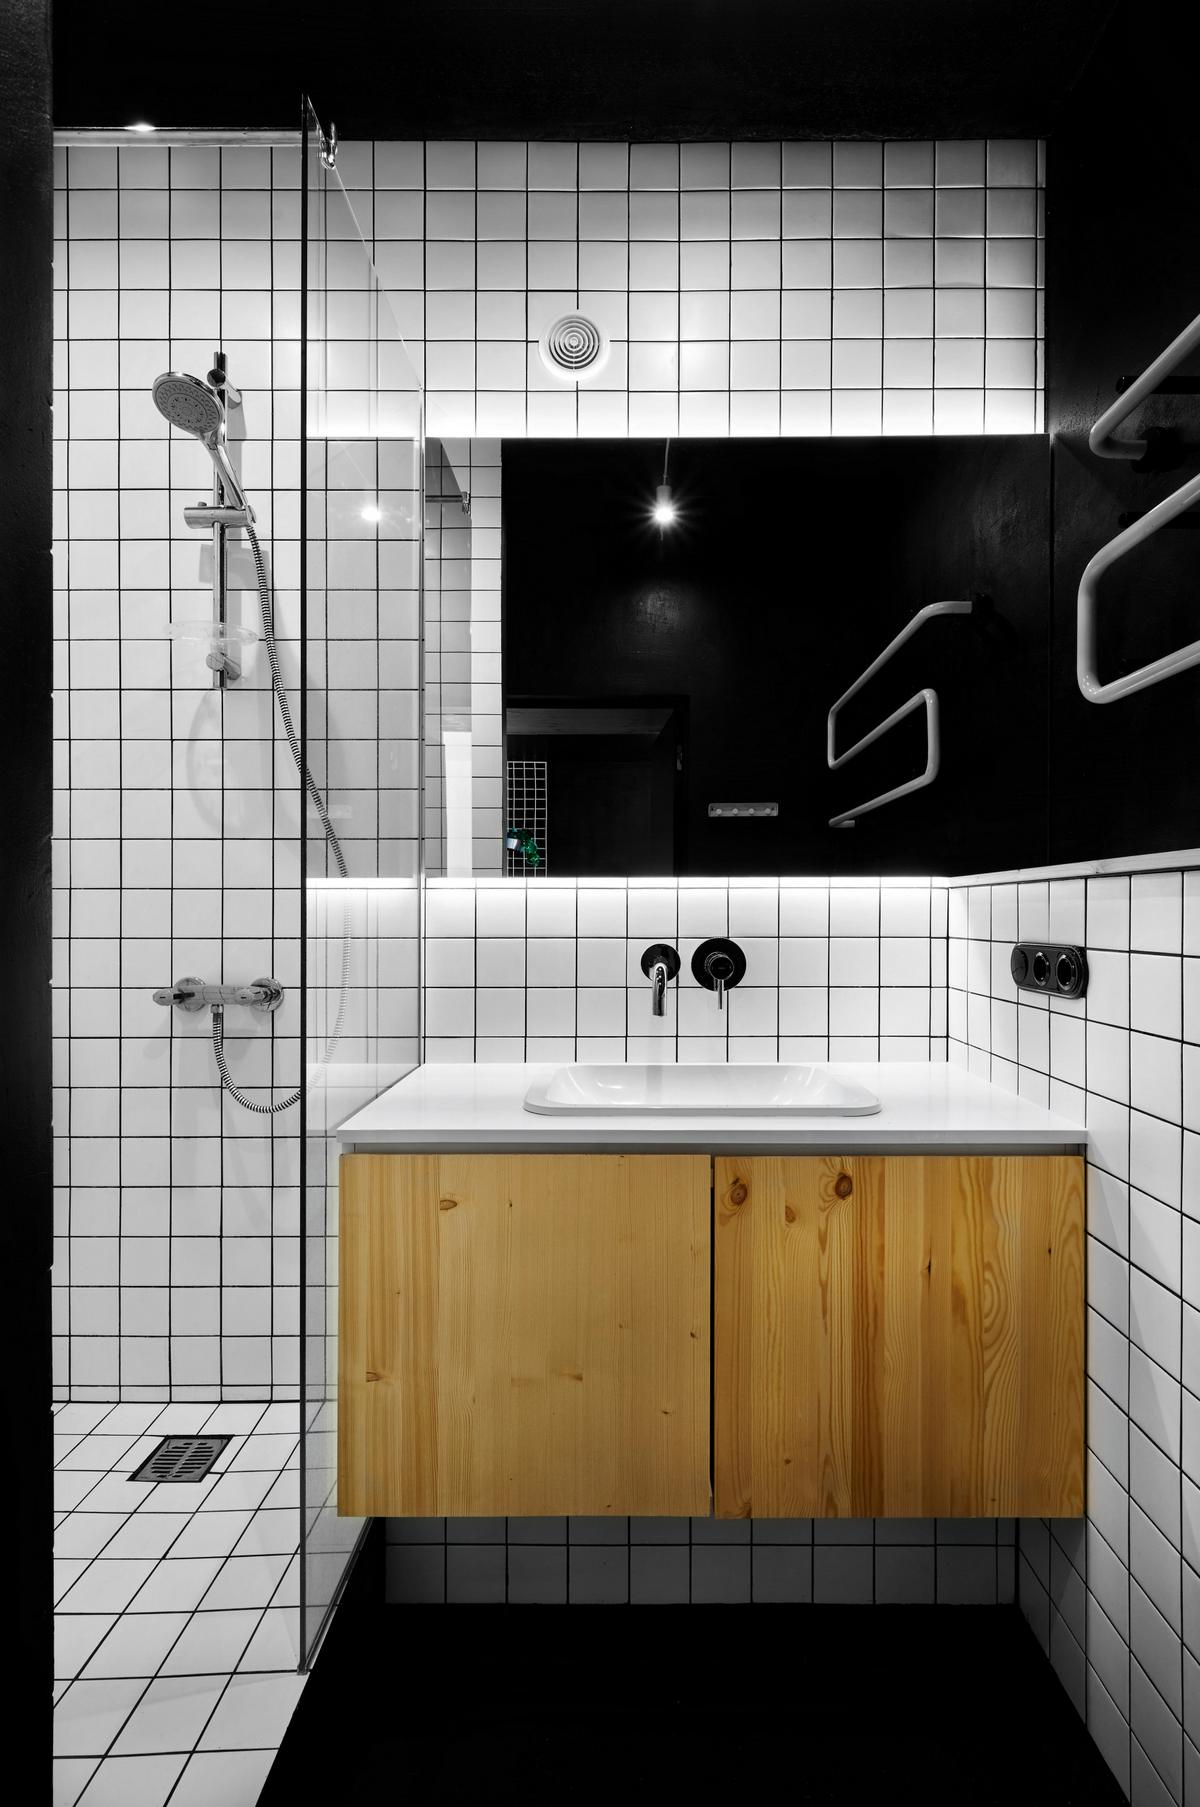 Tường phòng tắm ốp gạch màu trắng ô vuông nhỏ tương tự phòng bếp, phần tường sơn đen lắp đặt những chiếc móc kim loại cố định để treo khăn tắm, quần áo cần thay,...